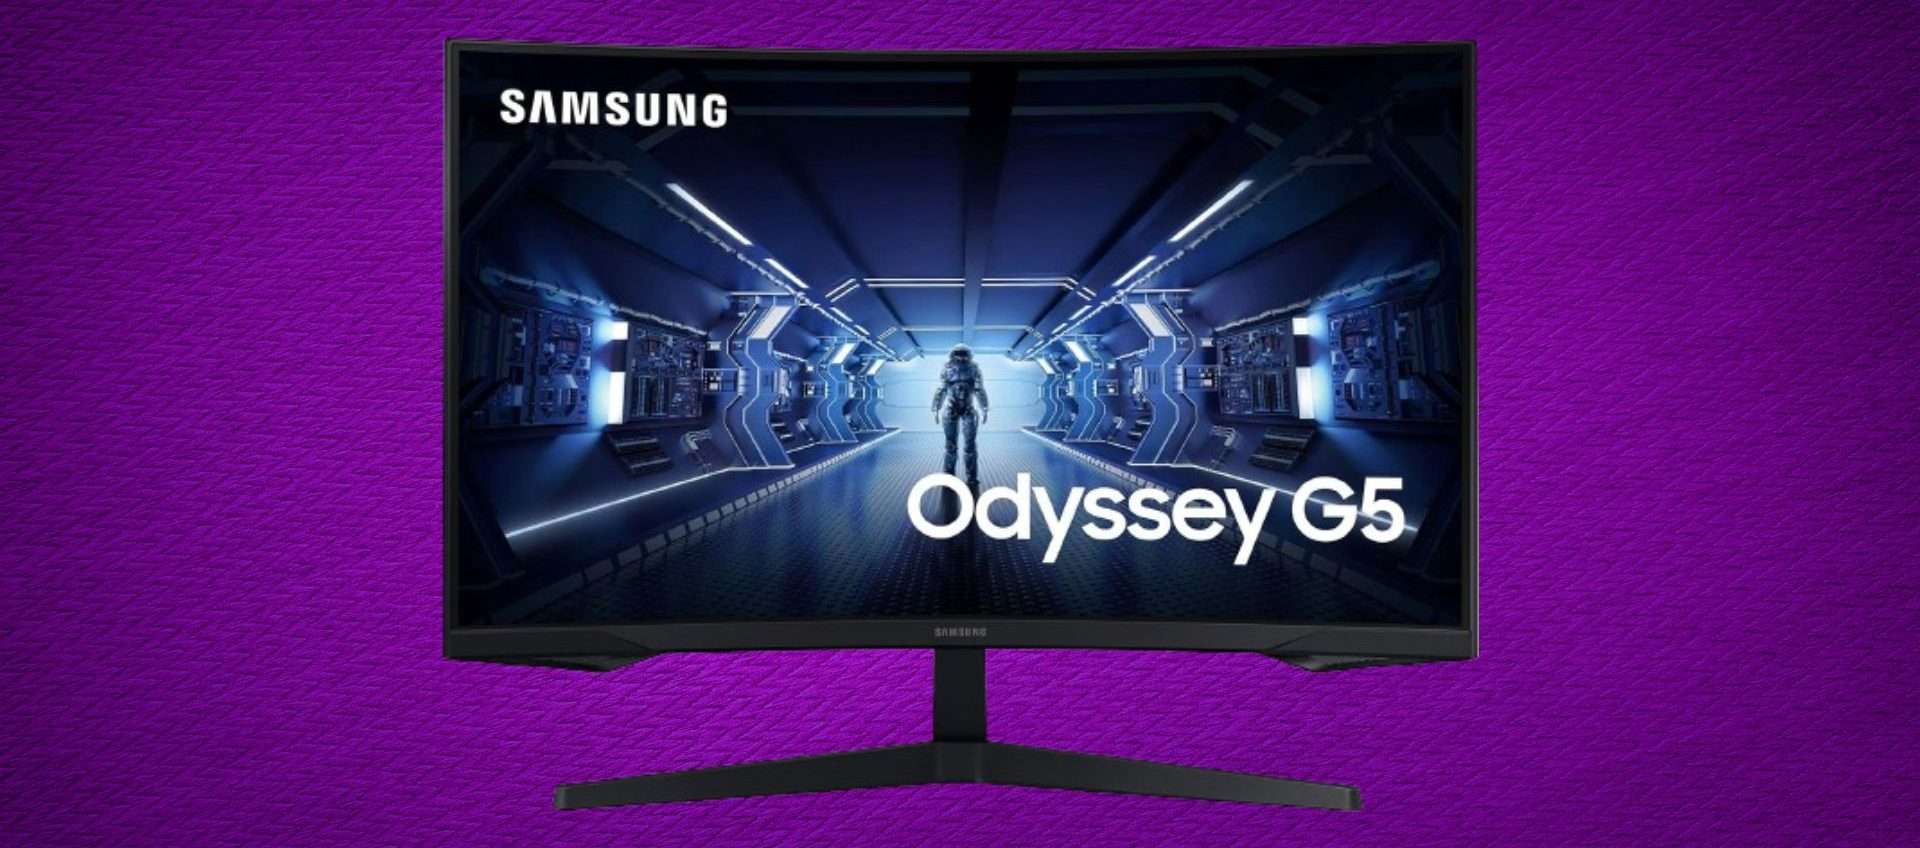 Samsung Odyssey G5 in offerta: il prezzo scende sotto i 250€